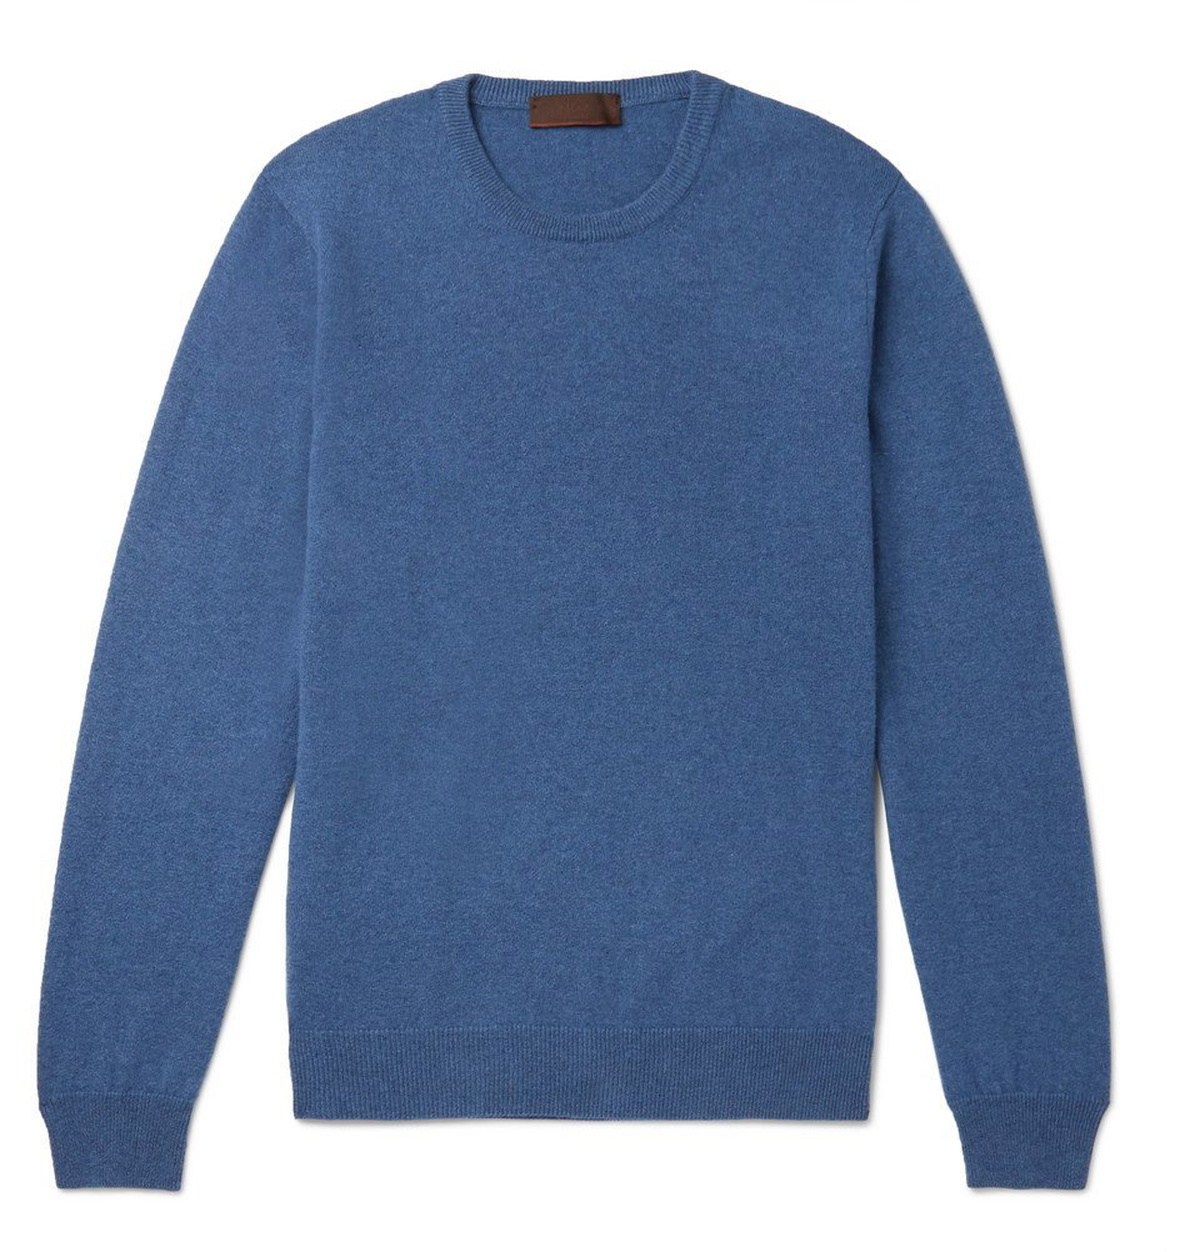 Altea - Cashmere Sweater - Men - Blue Altea